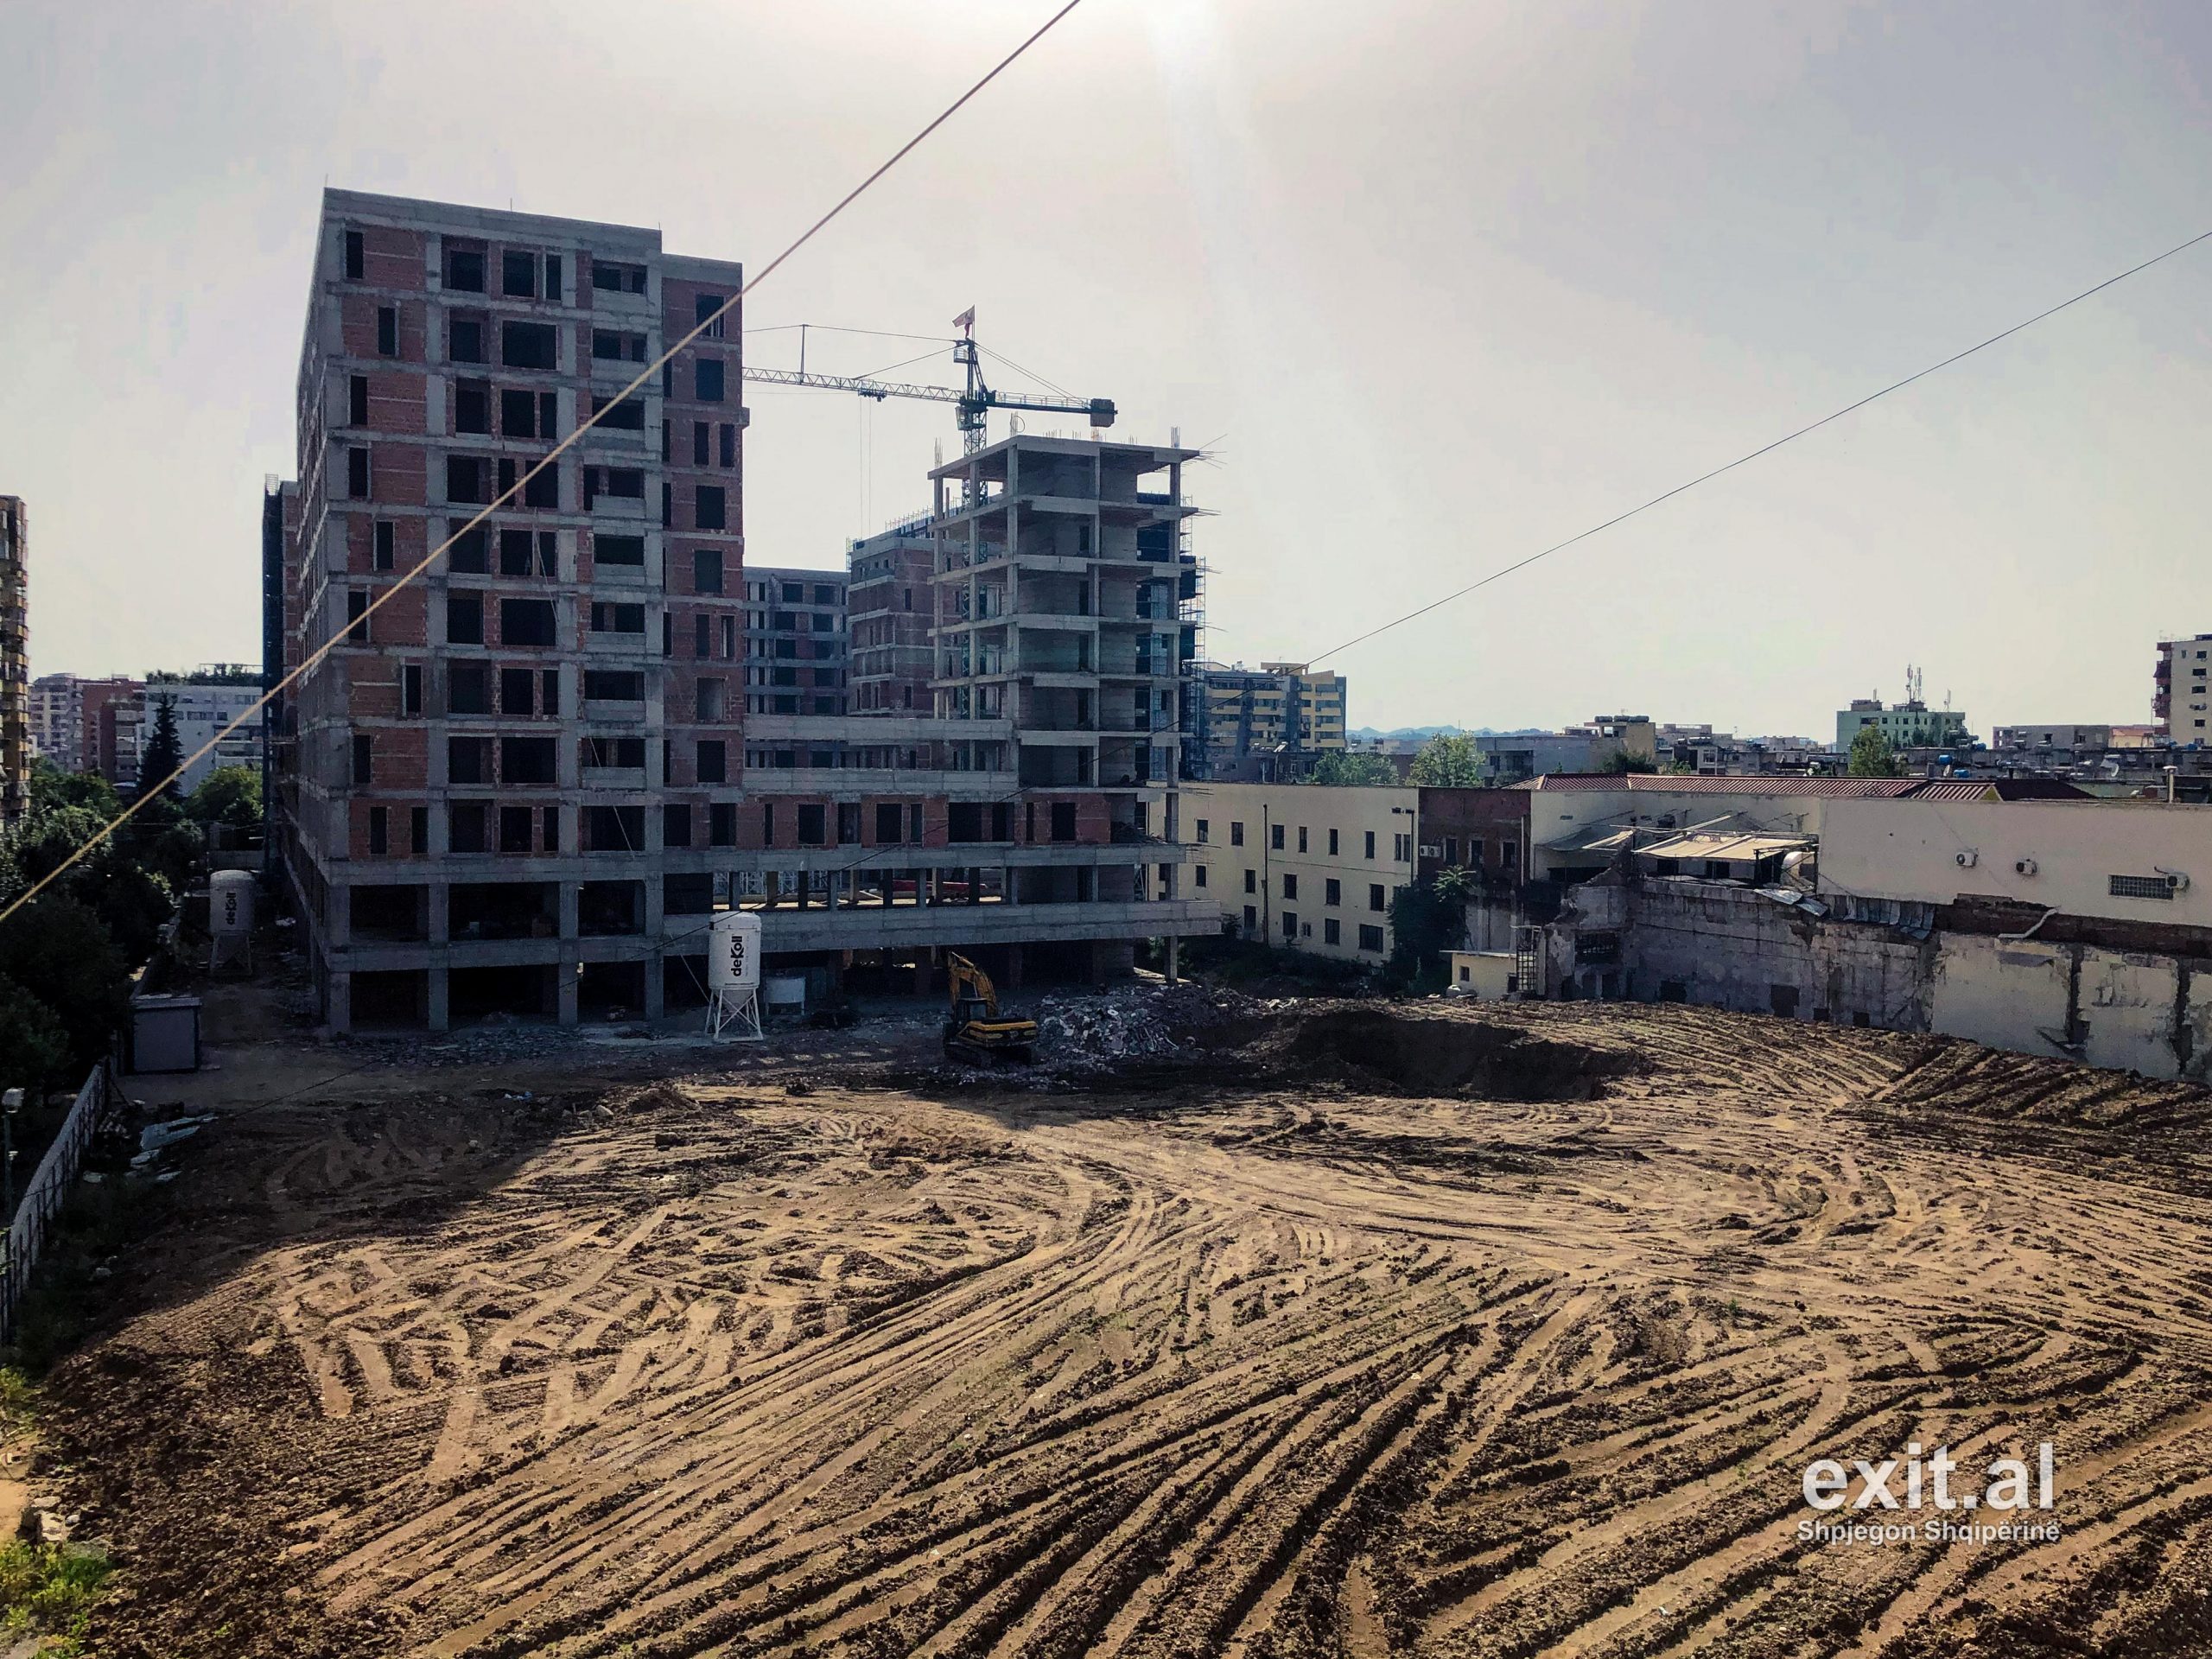 Pezullohen lejet e ndërtimit në qarqet Tiranë, Durrës e Lezhë